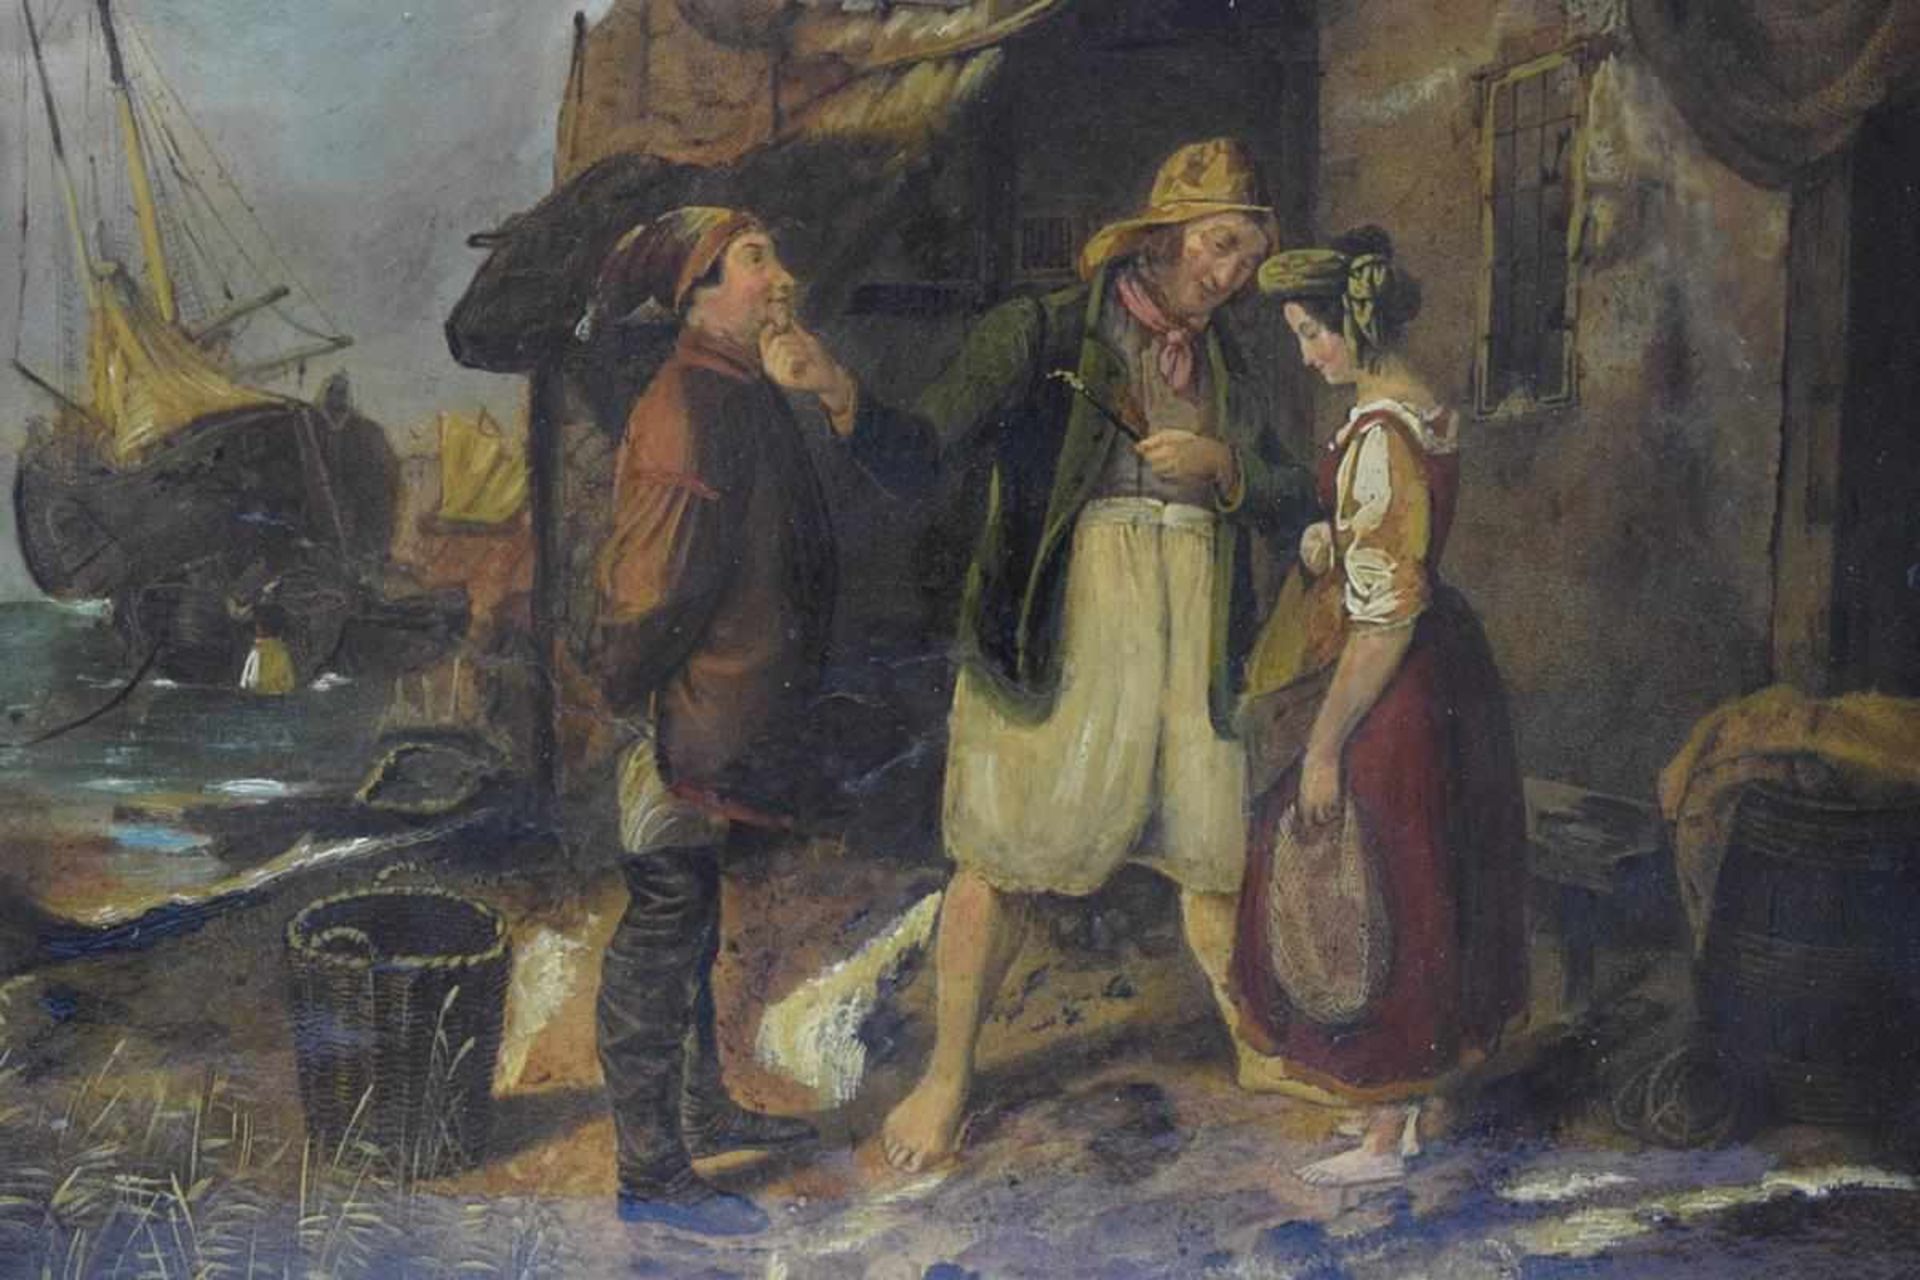 Ölgemälde "Verkuppler" umÖl auf Leinwand, im Hintergrund ein Segelschiff, Maße: 26,5 cm x 24 cm, - Bild 3 aus 3